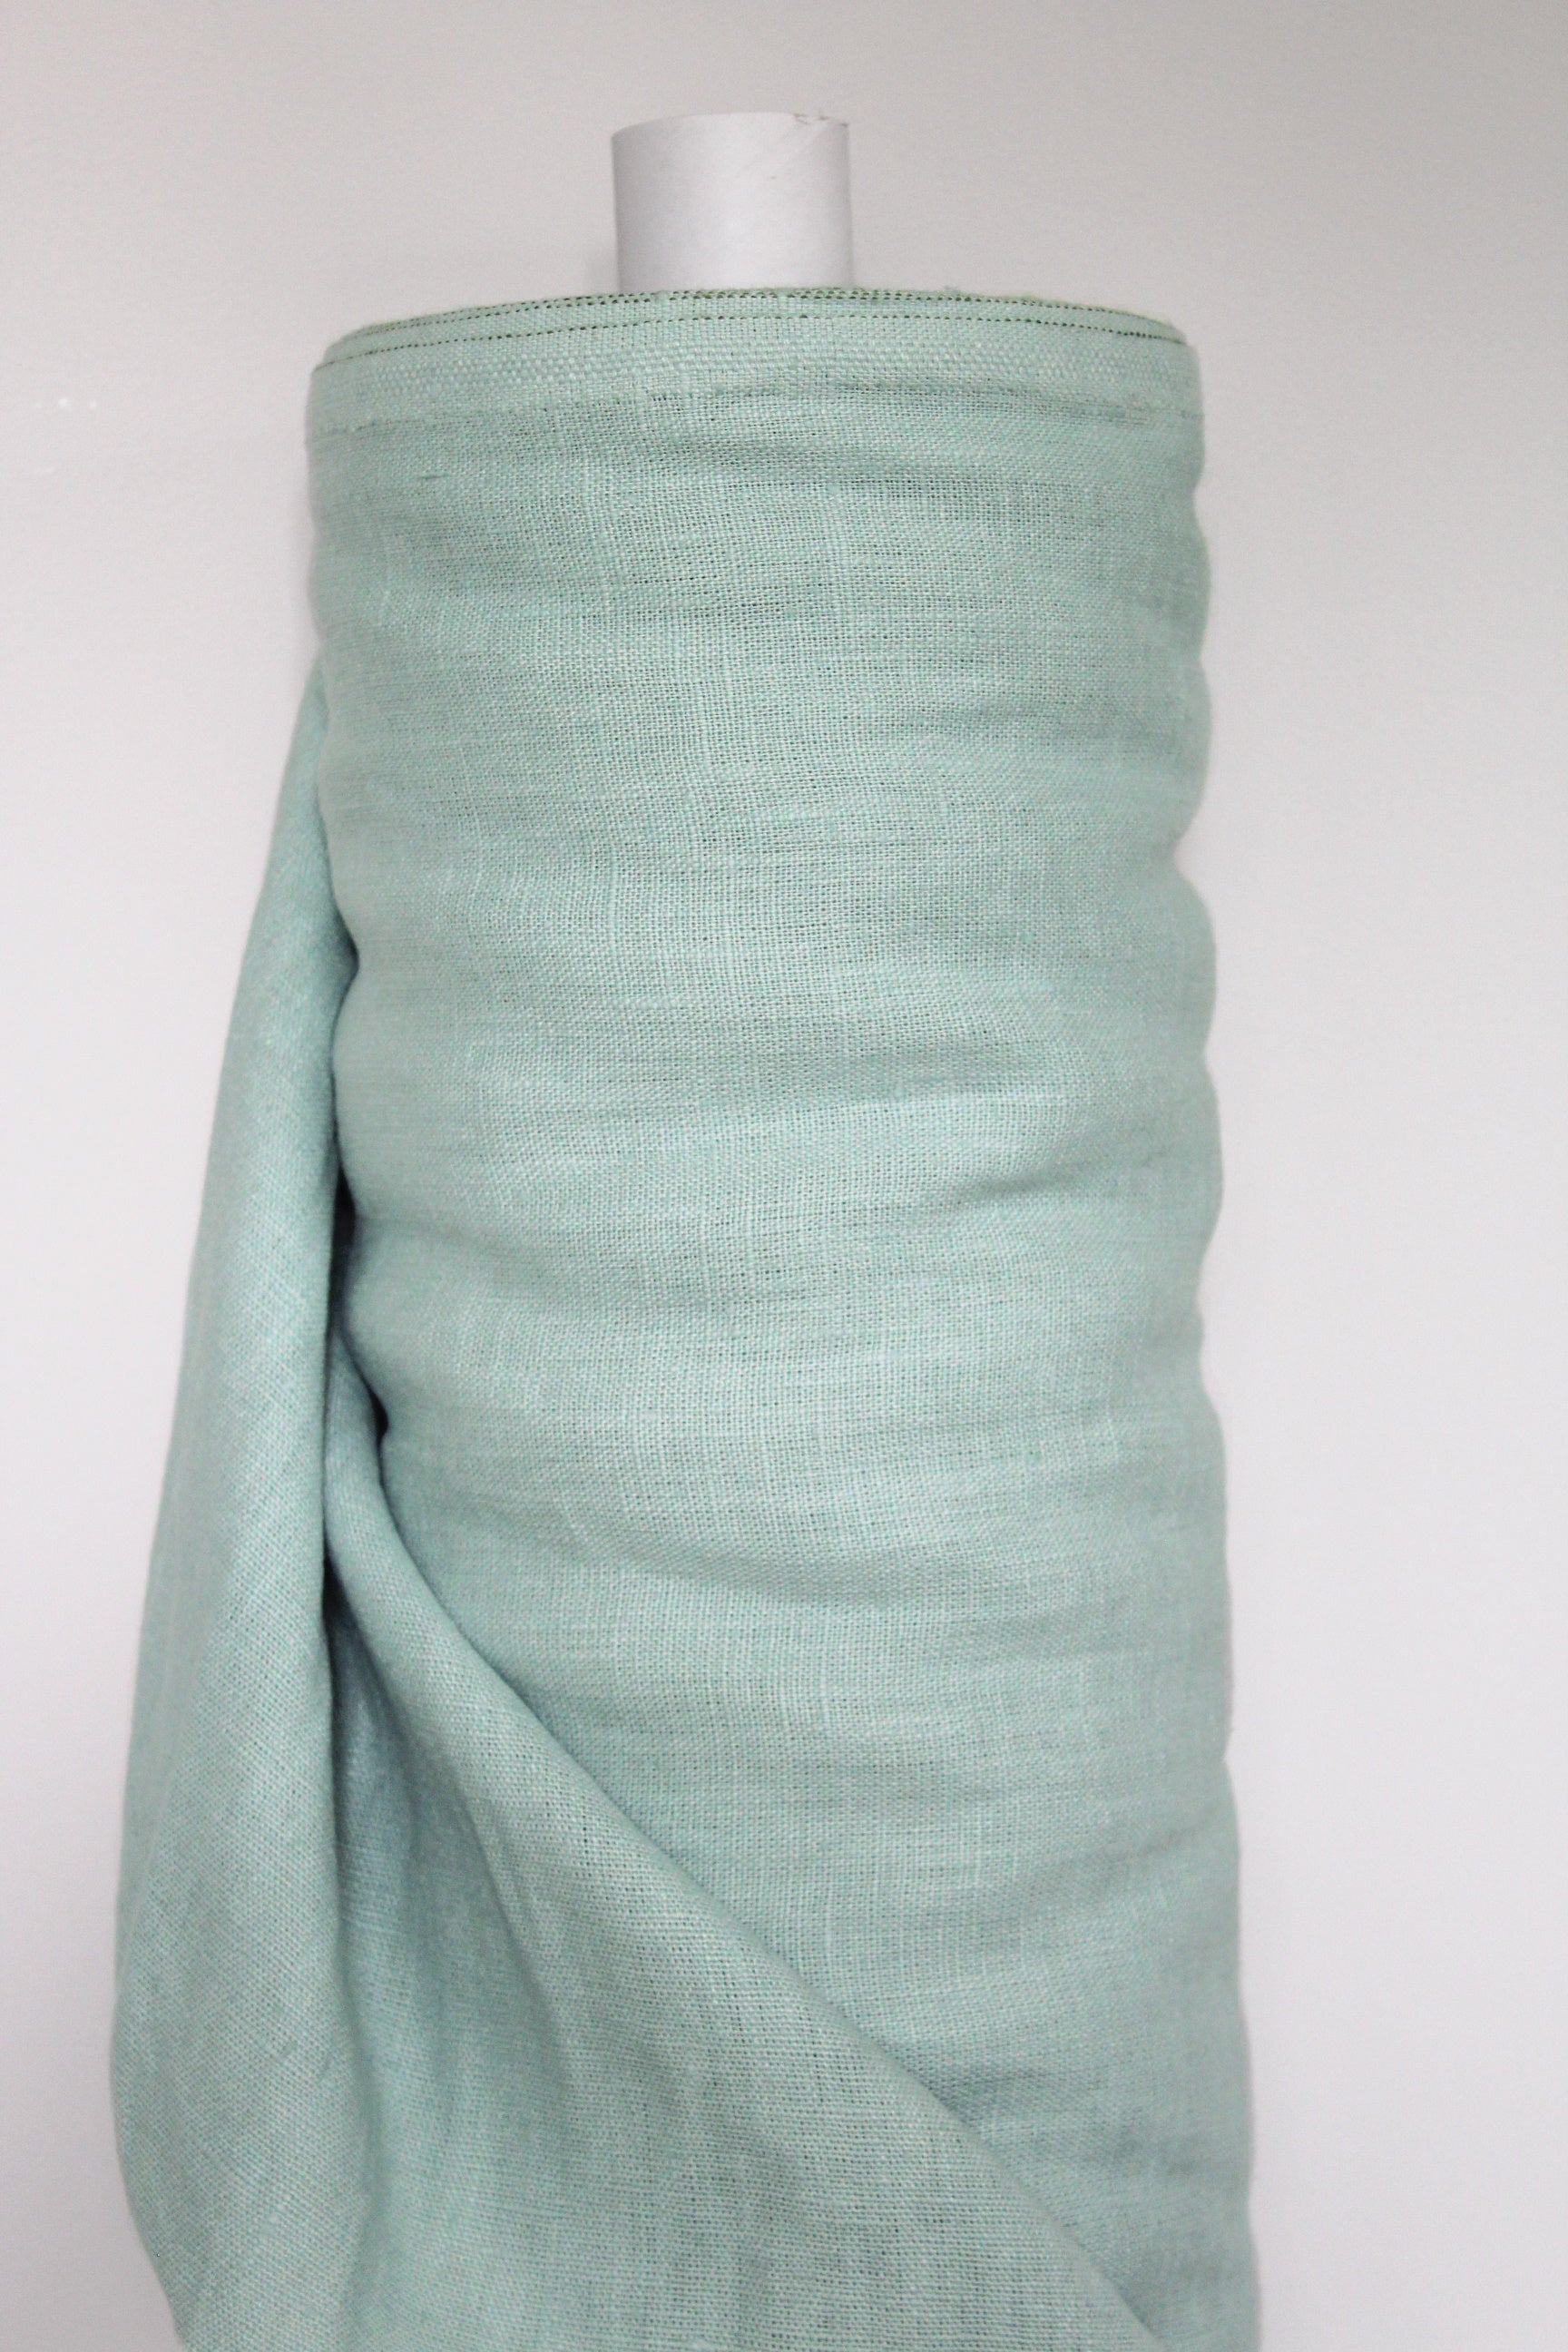 Maya Smoke Mint Linen Fabric - AVLEN